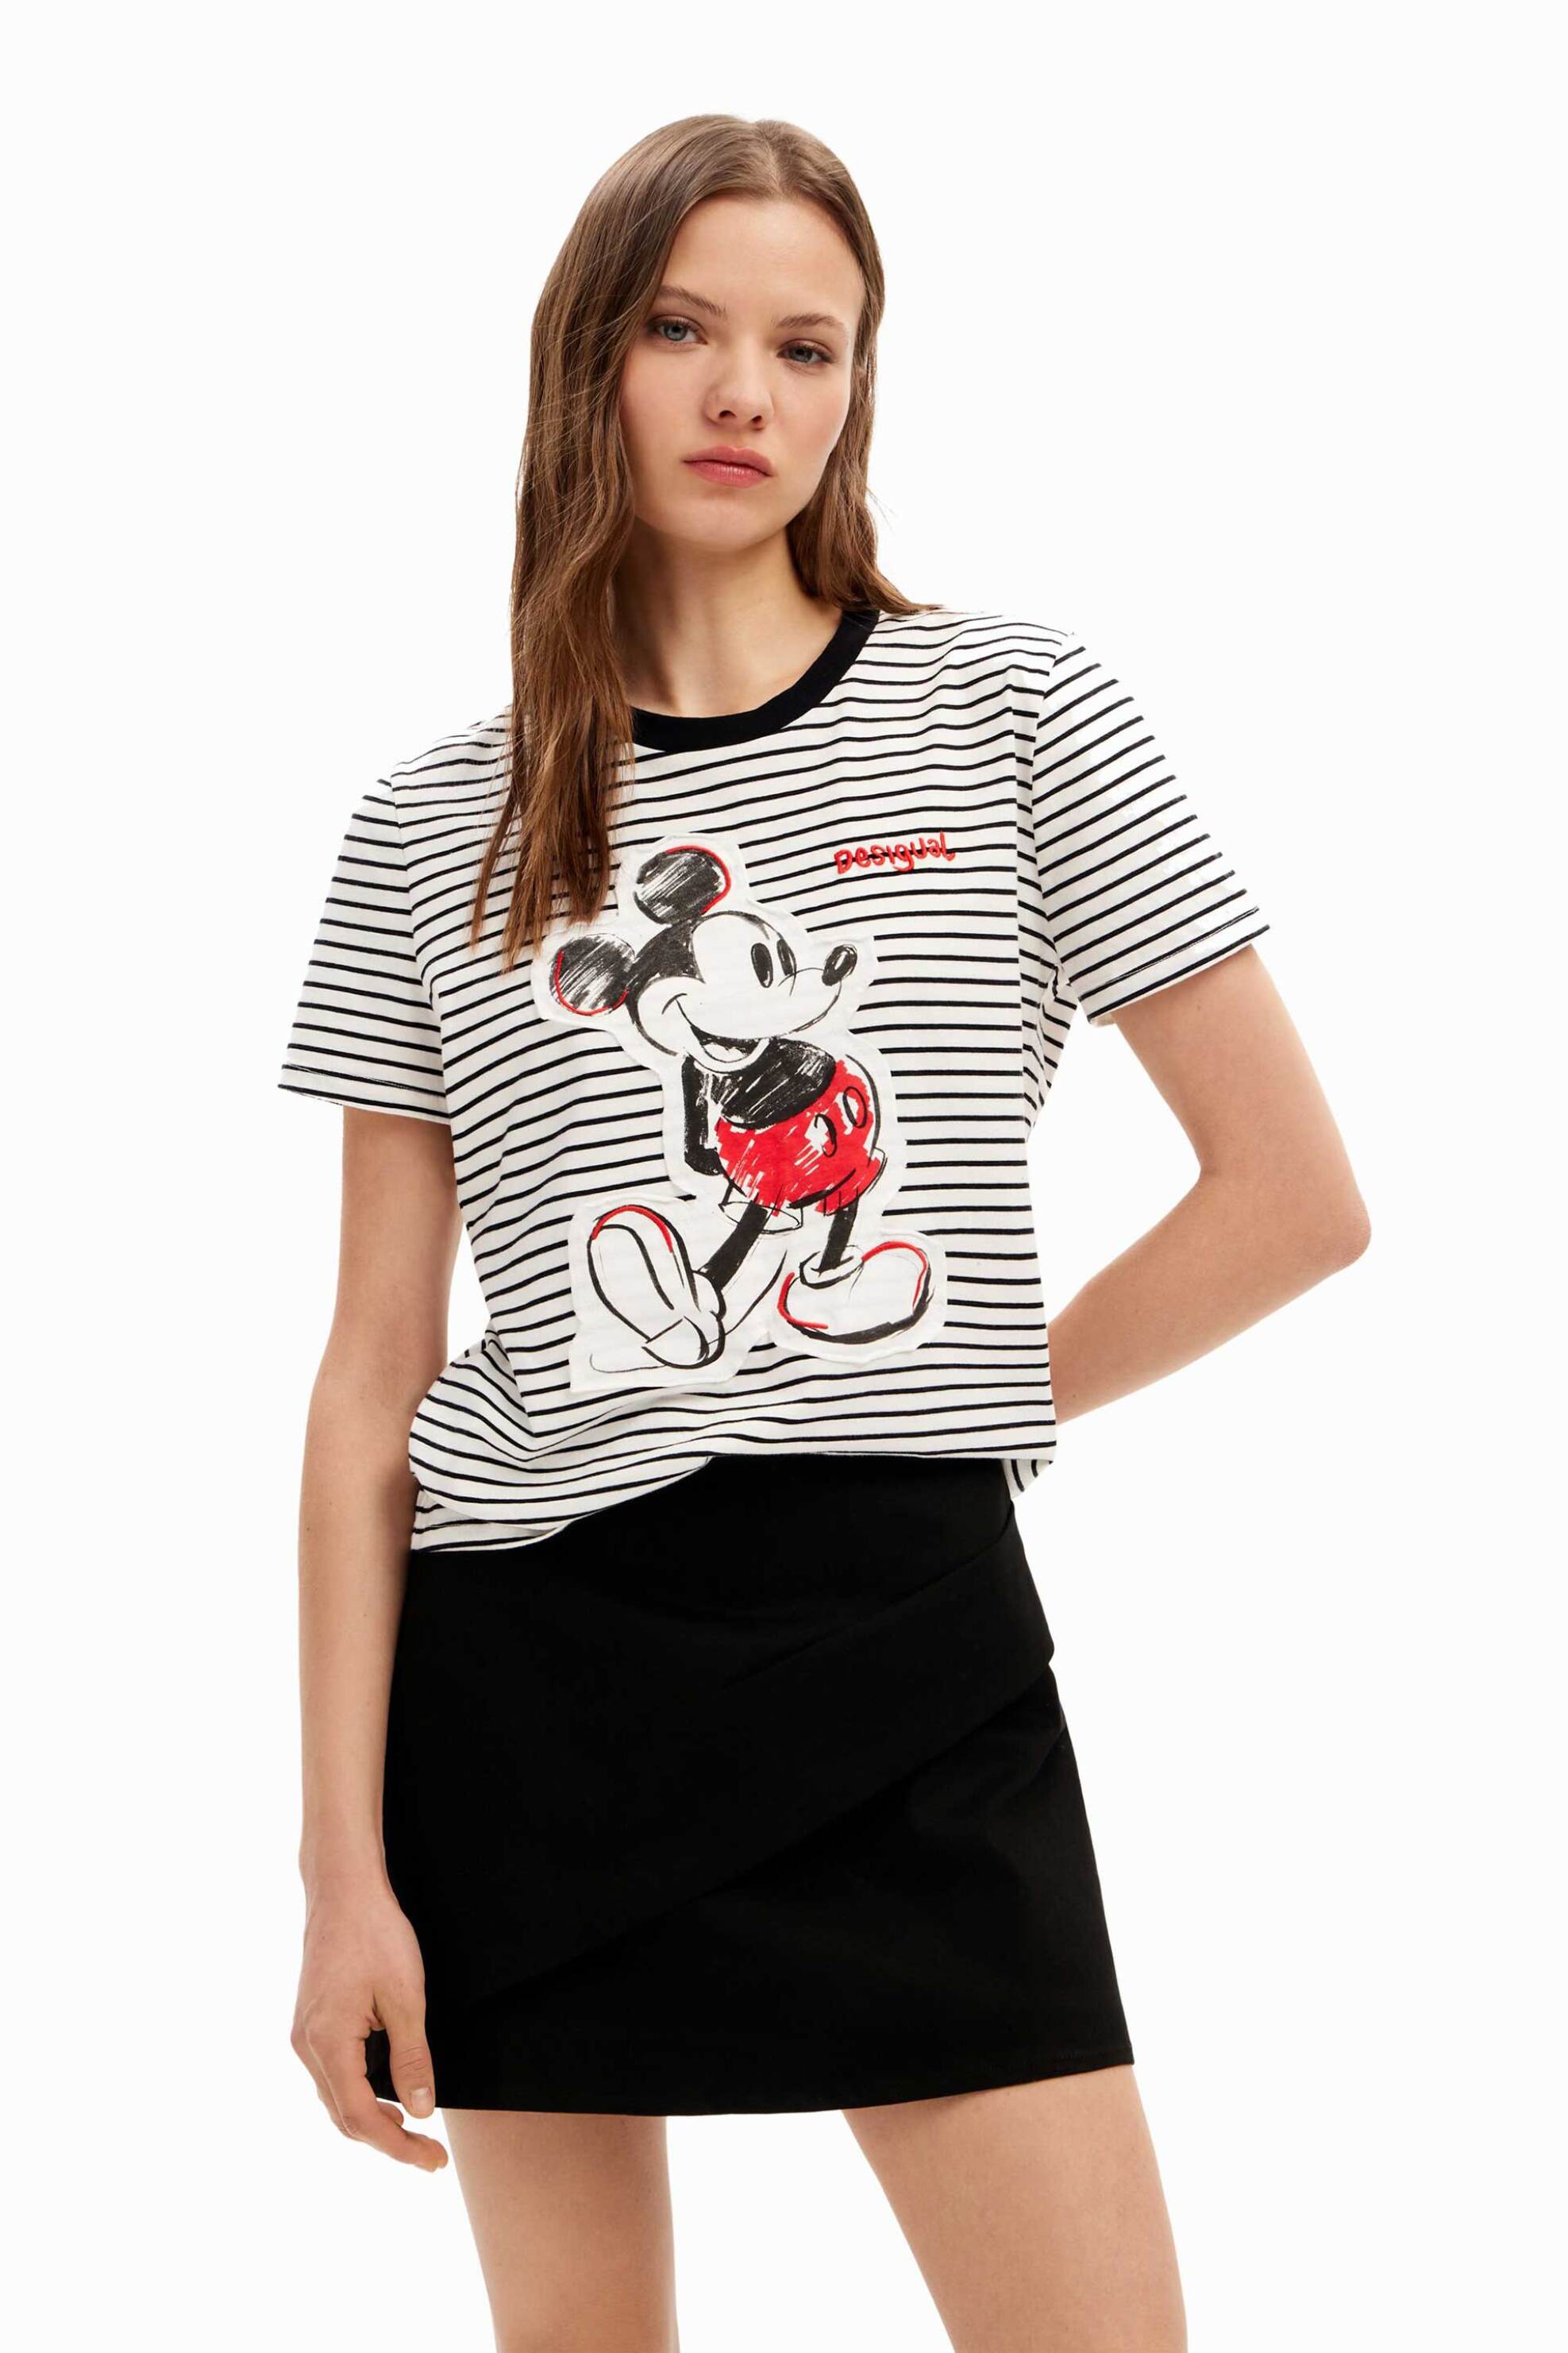 Γυναικεία Ρούχα & Αξεσουάρ > Γυναικεία Ρούχα > Γυναικεία Τοπ > Γυναικεία T-Shirts Desigual γυναικείο T-shirt με ριγέ σχέδιο και Mickey Mouse patch "Mickey Patch" - 24SWTK77 Λευκό